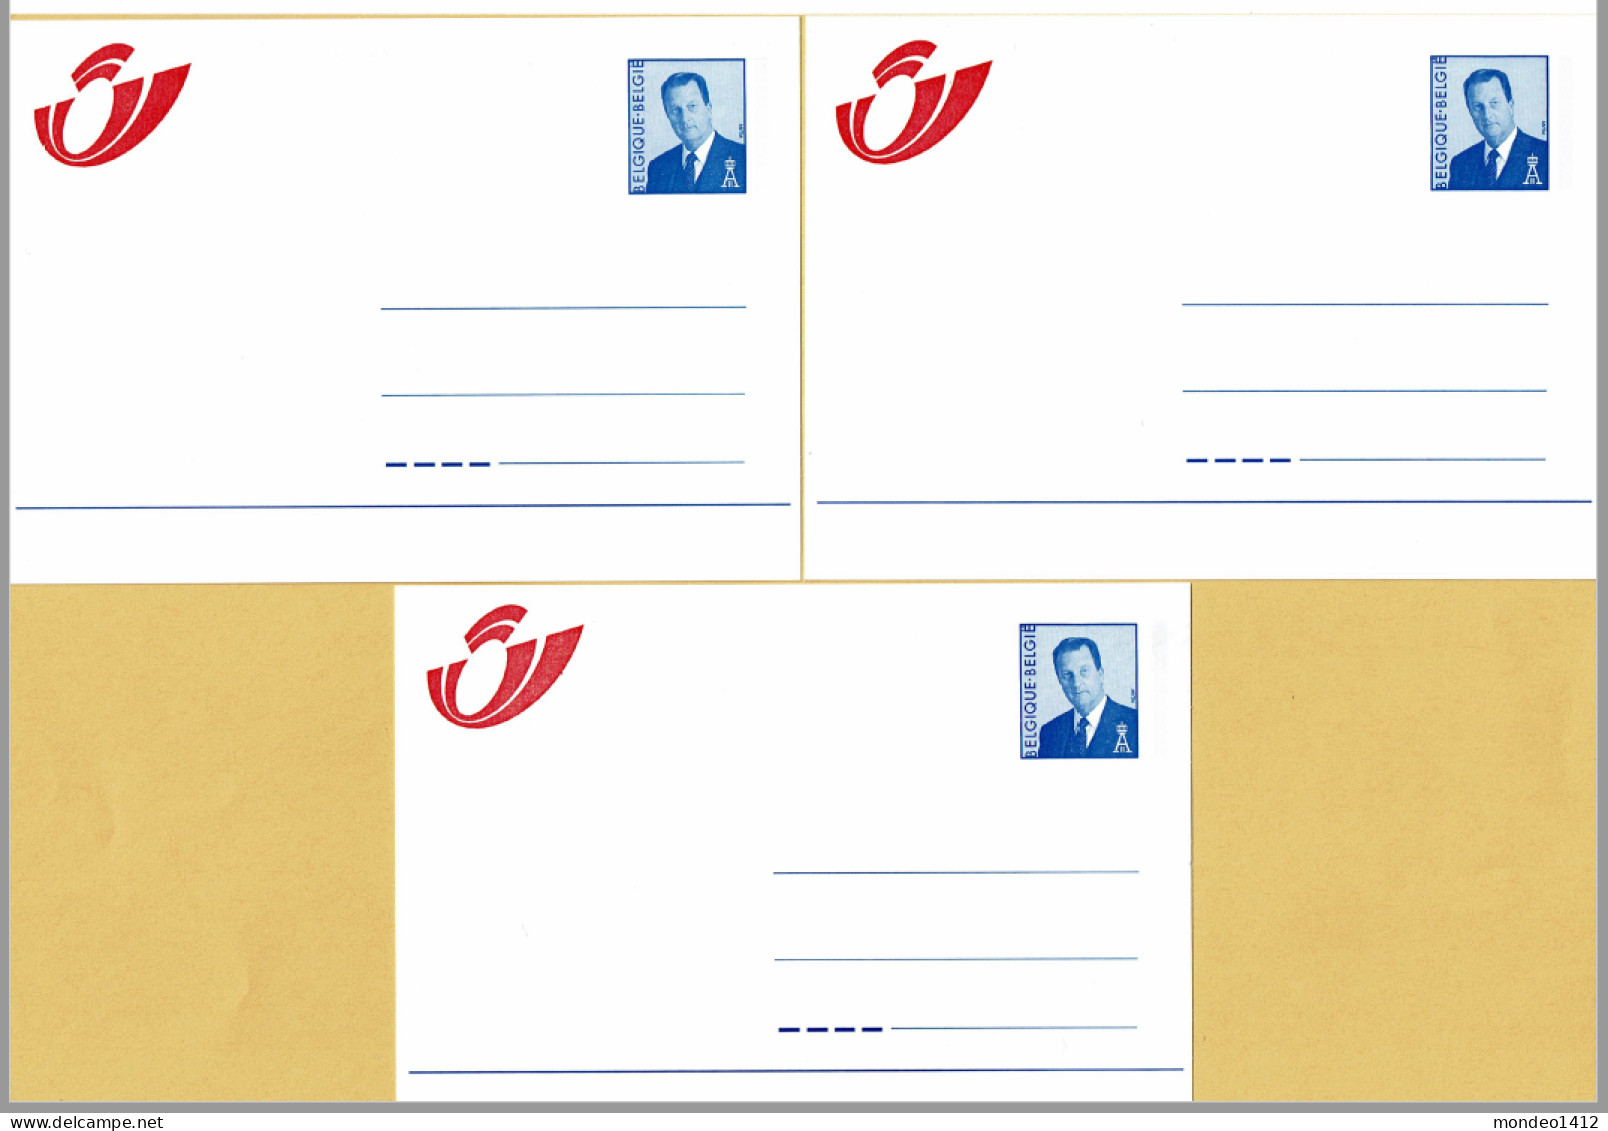 1998 - Briefkaarten - Mutapost Nieuw Postlogo - Adresverandering - Compleet N-F-D - Avviso Cambiamento Indirizzo